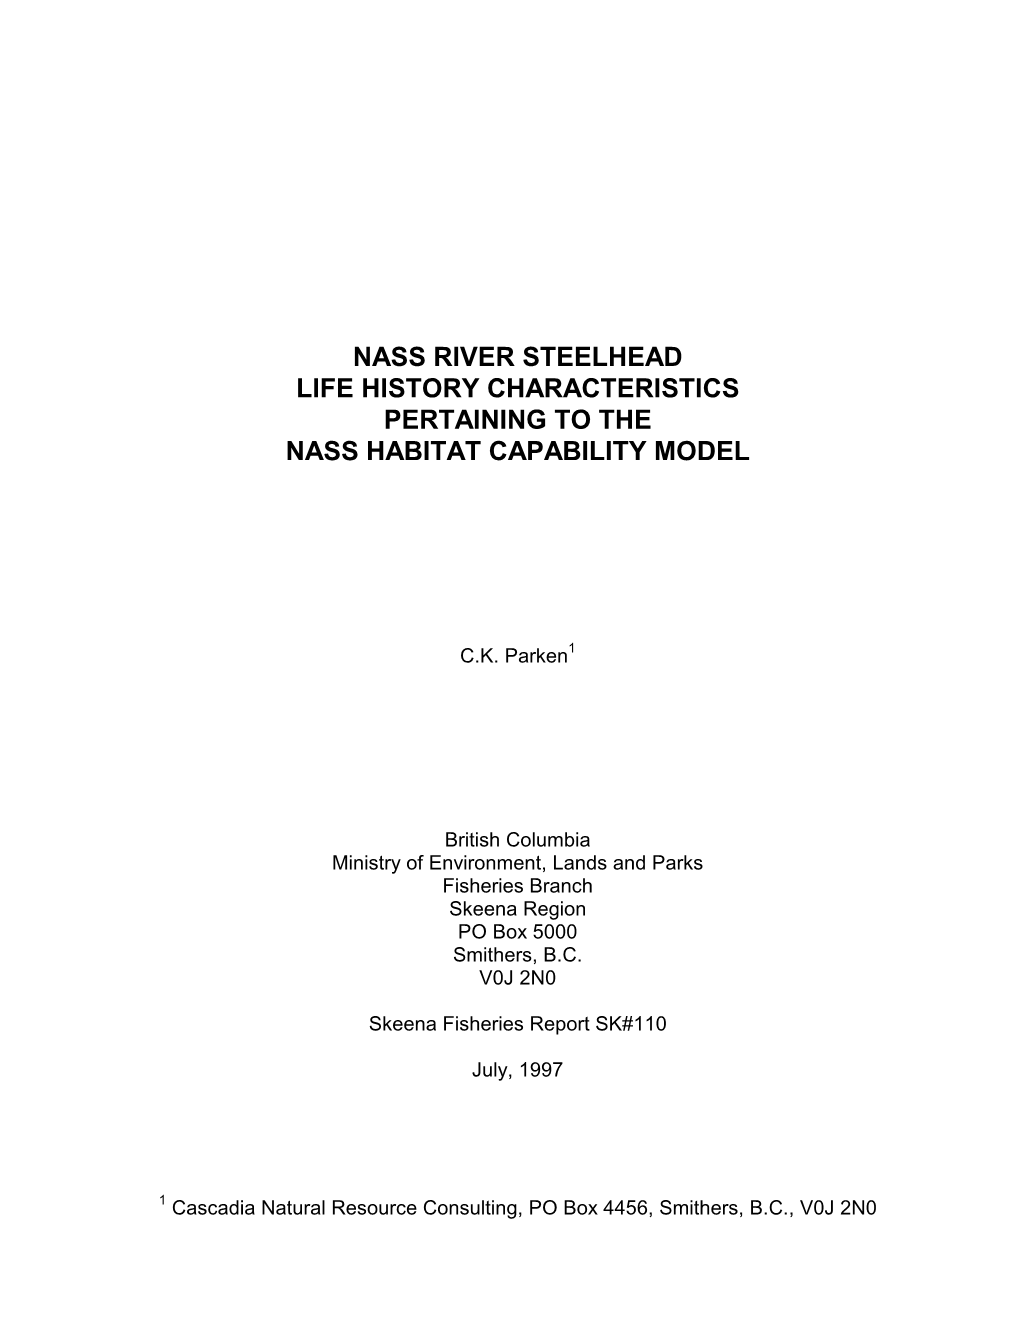 Nass River Steelhead Life History Characteristics Pertaining to the Nass Habitat Capability Model